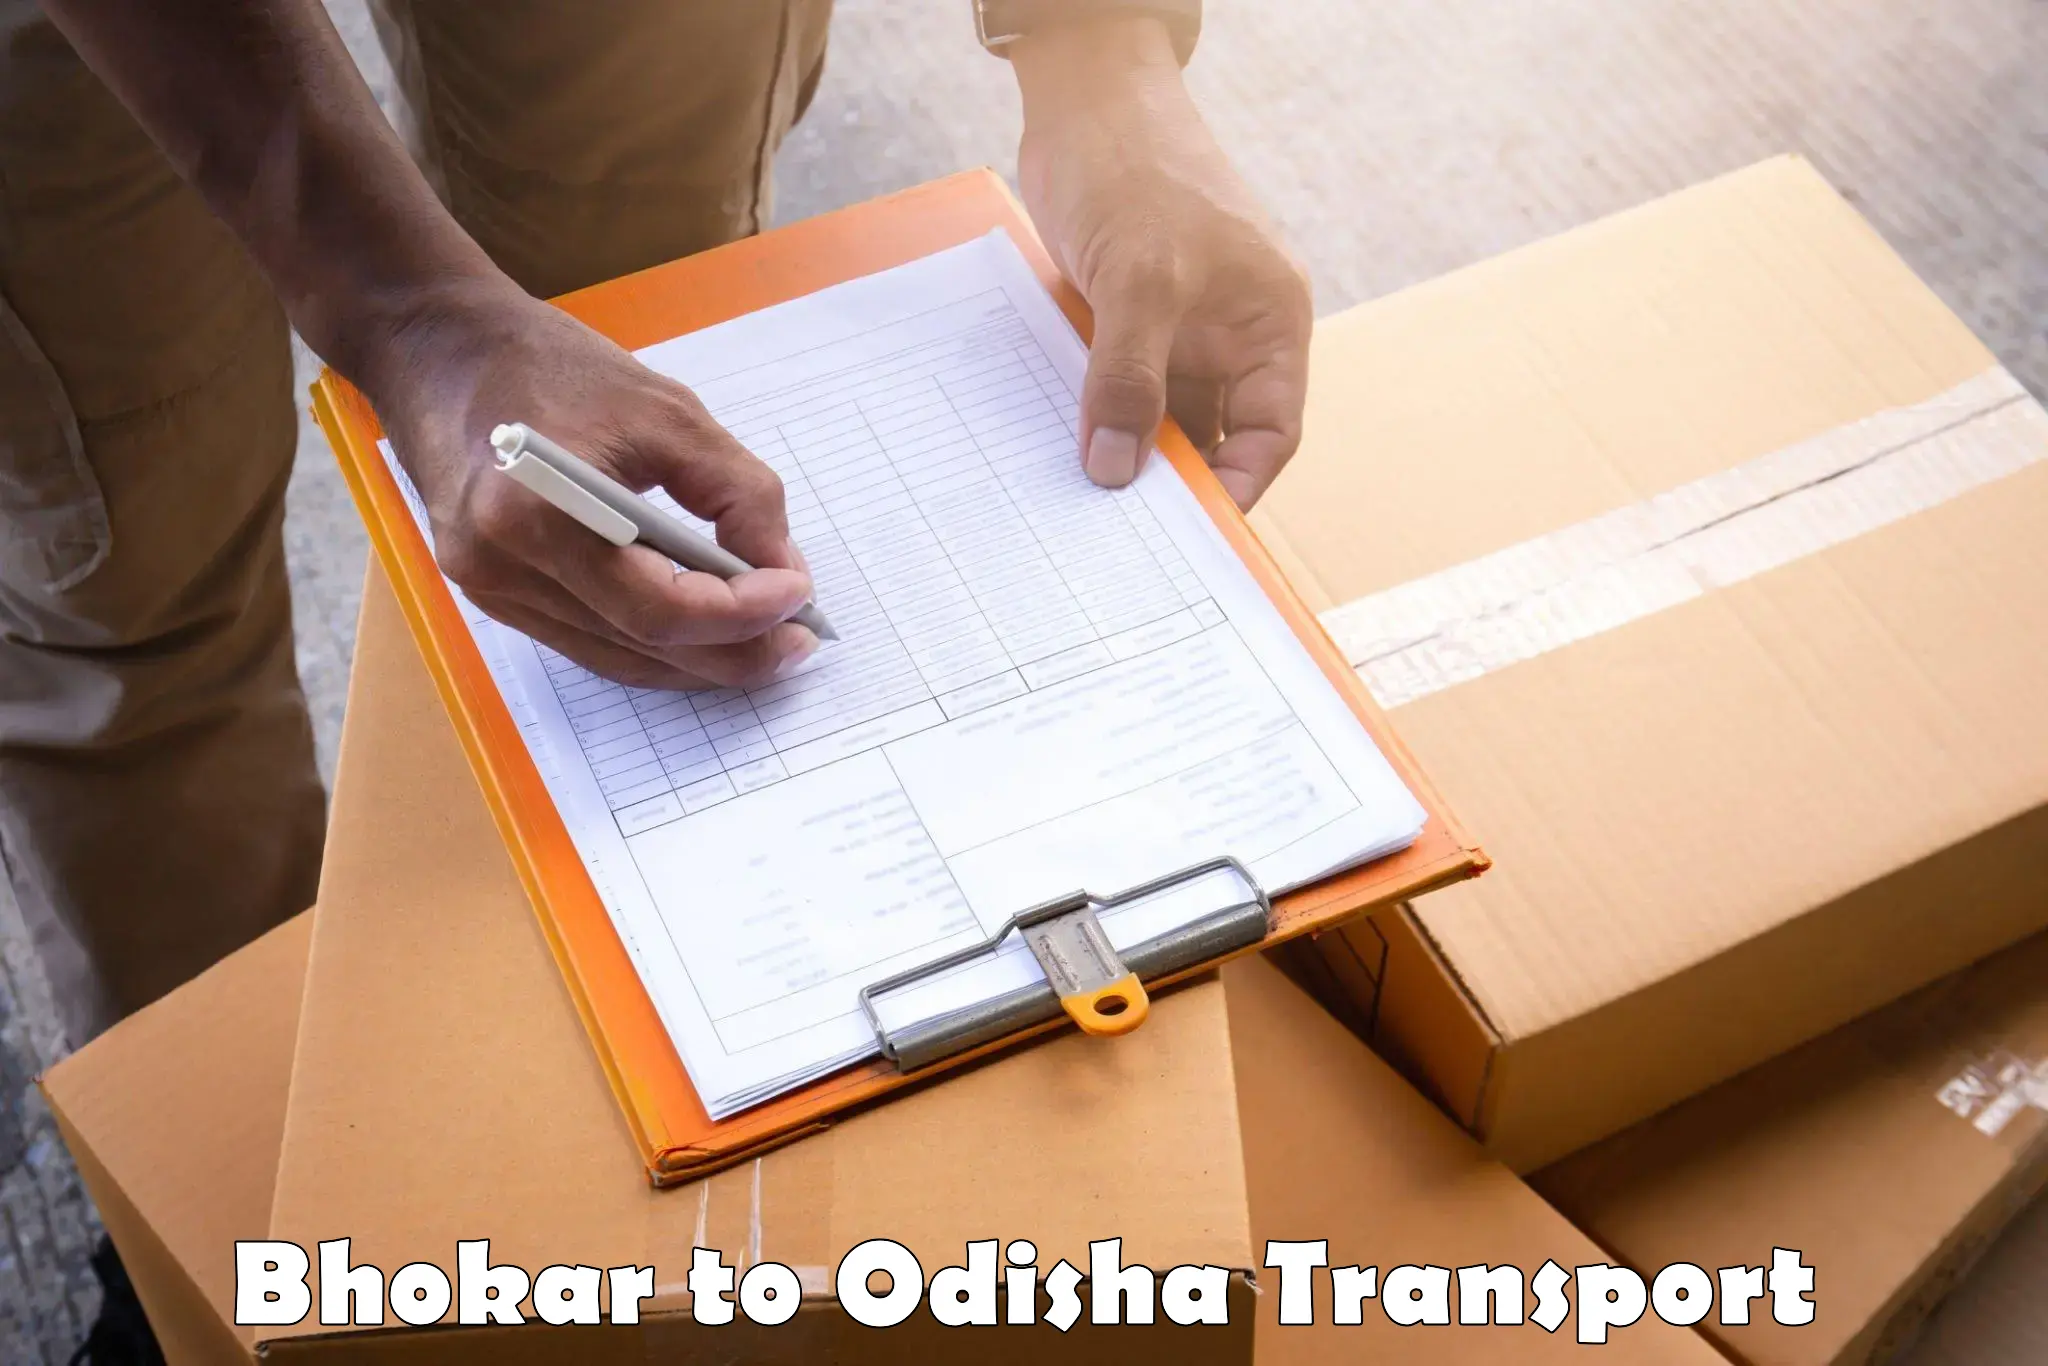 Transport shared services Bhokar to Mohana